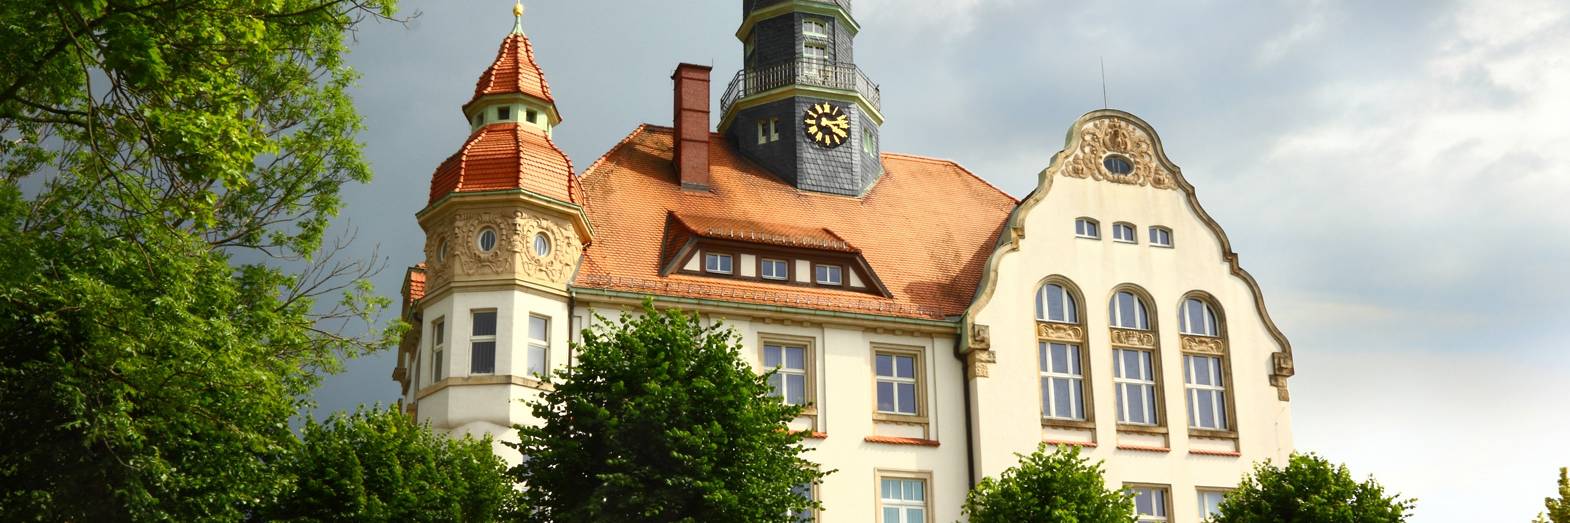 Rathaus Stadt Großröhrsdorf